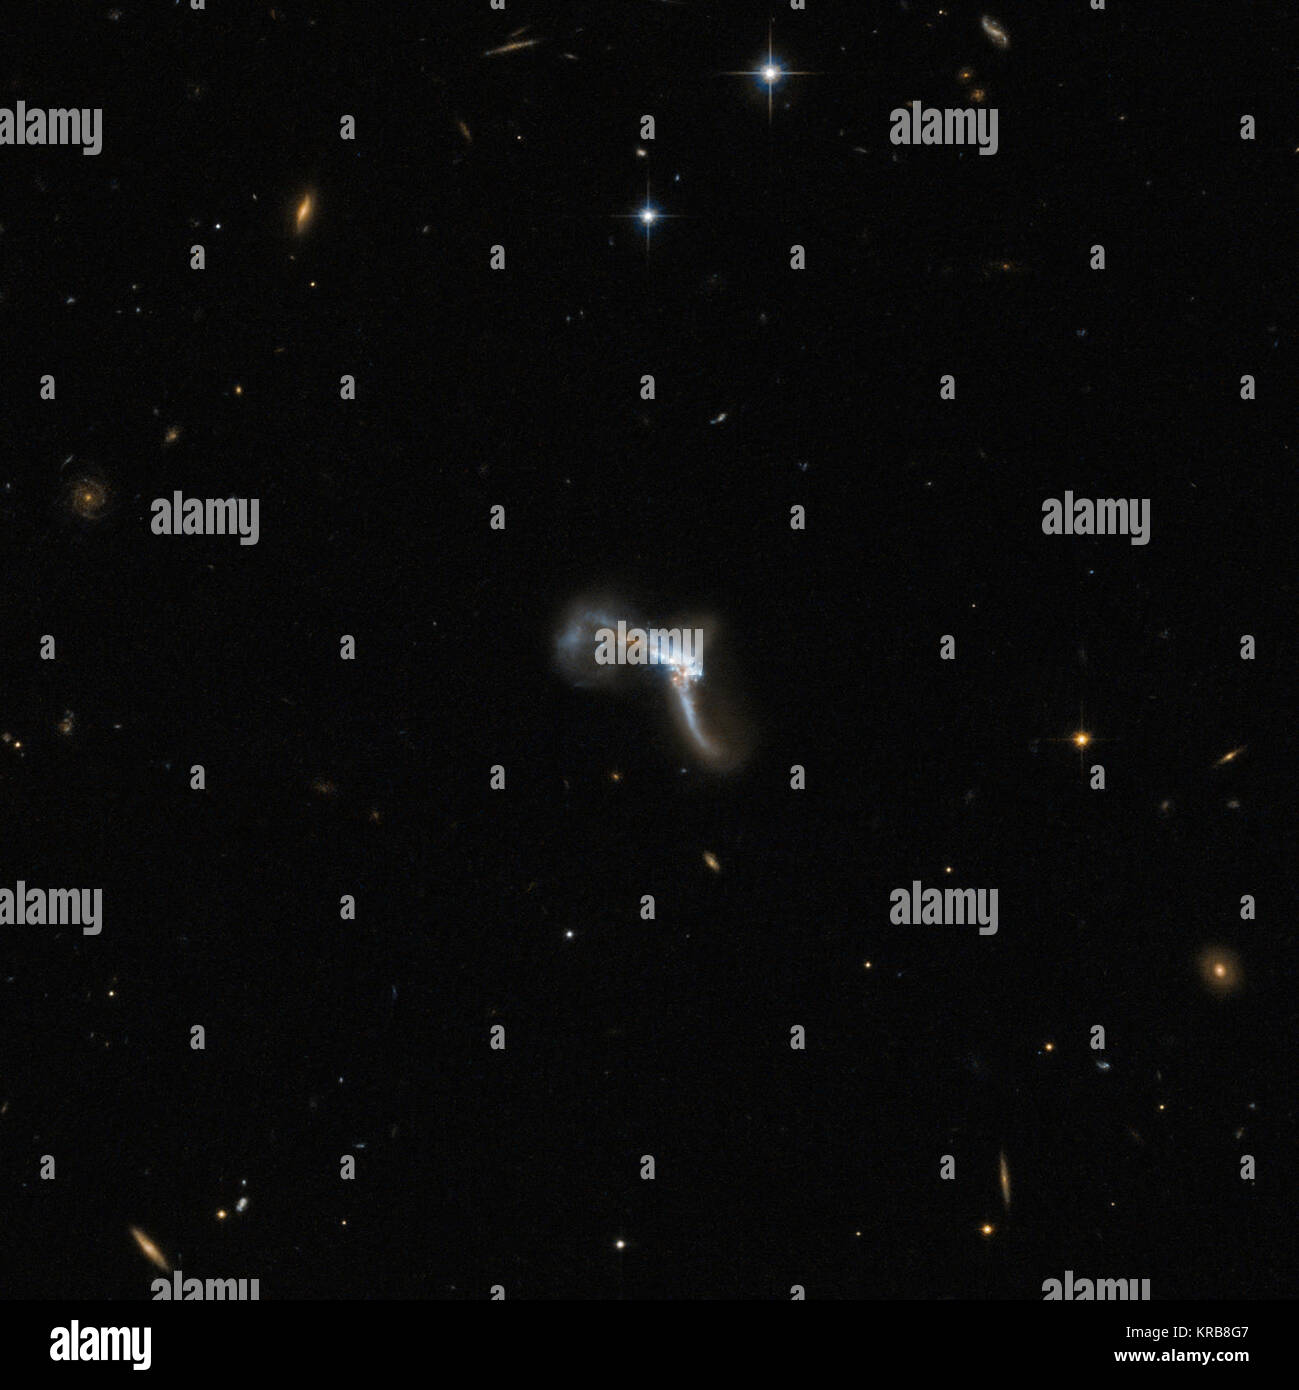 Die verzerrte Objekt durch Hubble in diesem Bild aufgenommen ist IRAS 22491-1808, auch Südamerika Galaxie bekannt. Es ist eine ultraluminous infrared Galaxy (ULIRG), die eine große Menge an Licht im infraroten Wellenlängen emittiert. Der Grund für diese intensive Ir-Emission liegt in einer Episode von starke Sternentstehung Aktivität, die durch eine Kollision zwischen zwei interagierende Galaxien gesetzt wurde. In diesem Bild die verdrehten Form verbirgt sich eine Reihe von Features. In der Central Region, die sehr komplex ist und gestört, Wissenschaftler konnten zwei Atomkernen zu unterscheiden, bleibt der zwei unterschiedlichen Stockfoto